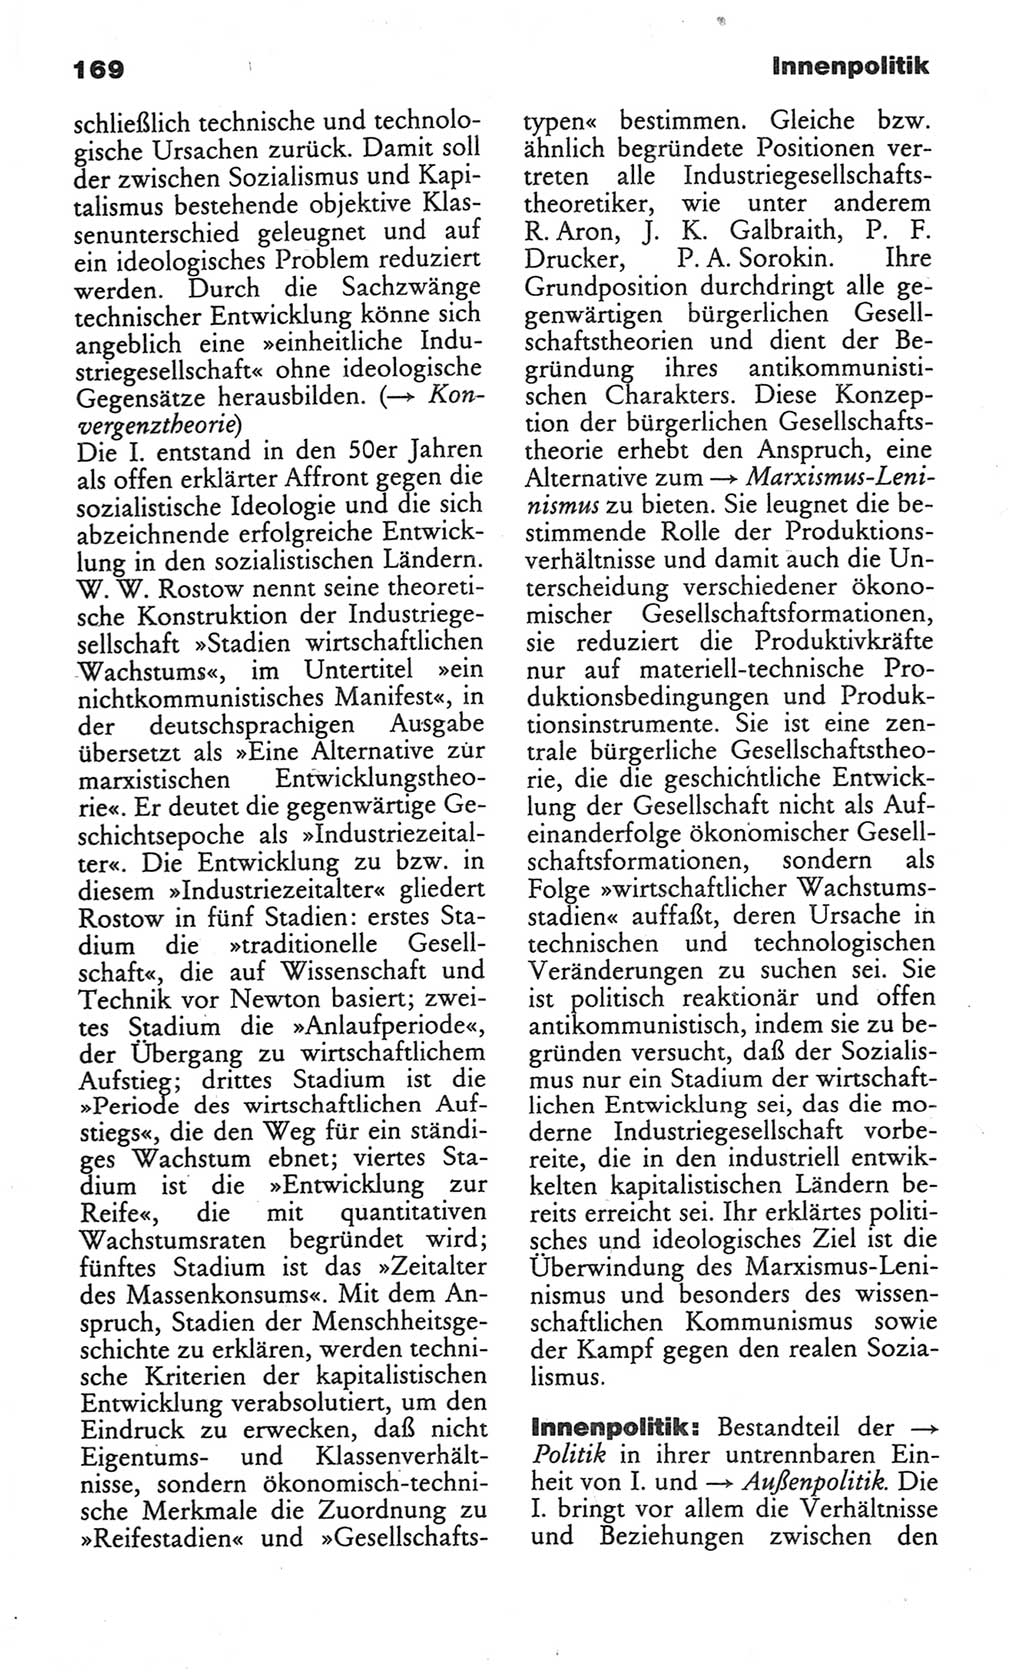 Wörterbuch des wissenschaftlichen Kommunismus [Deutsche Demokratische Republik (DDR)] 1984, Seite 169 (Wb. wiss. Komm. DDR 1984, S. 169)